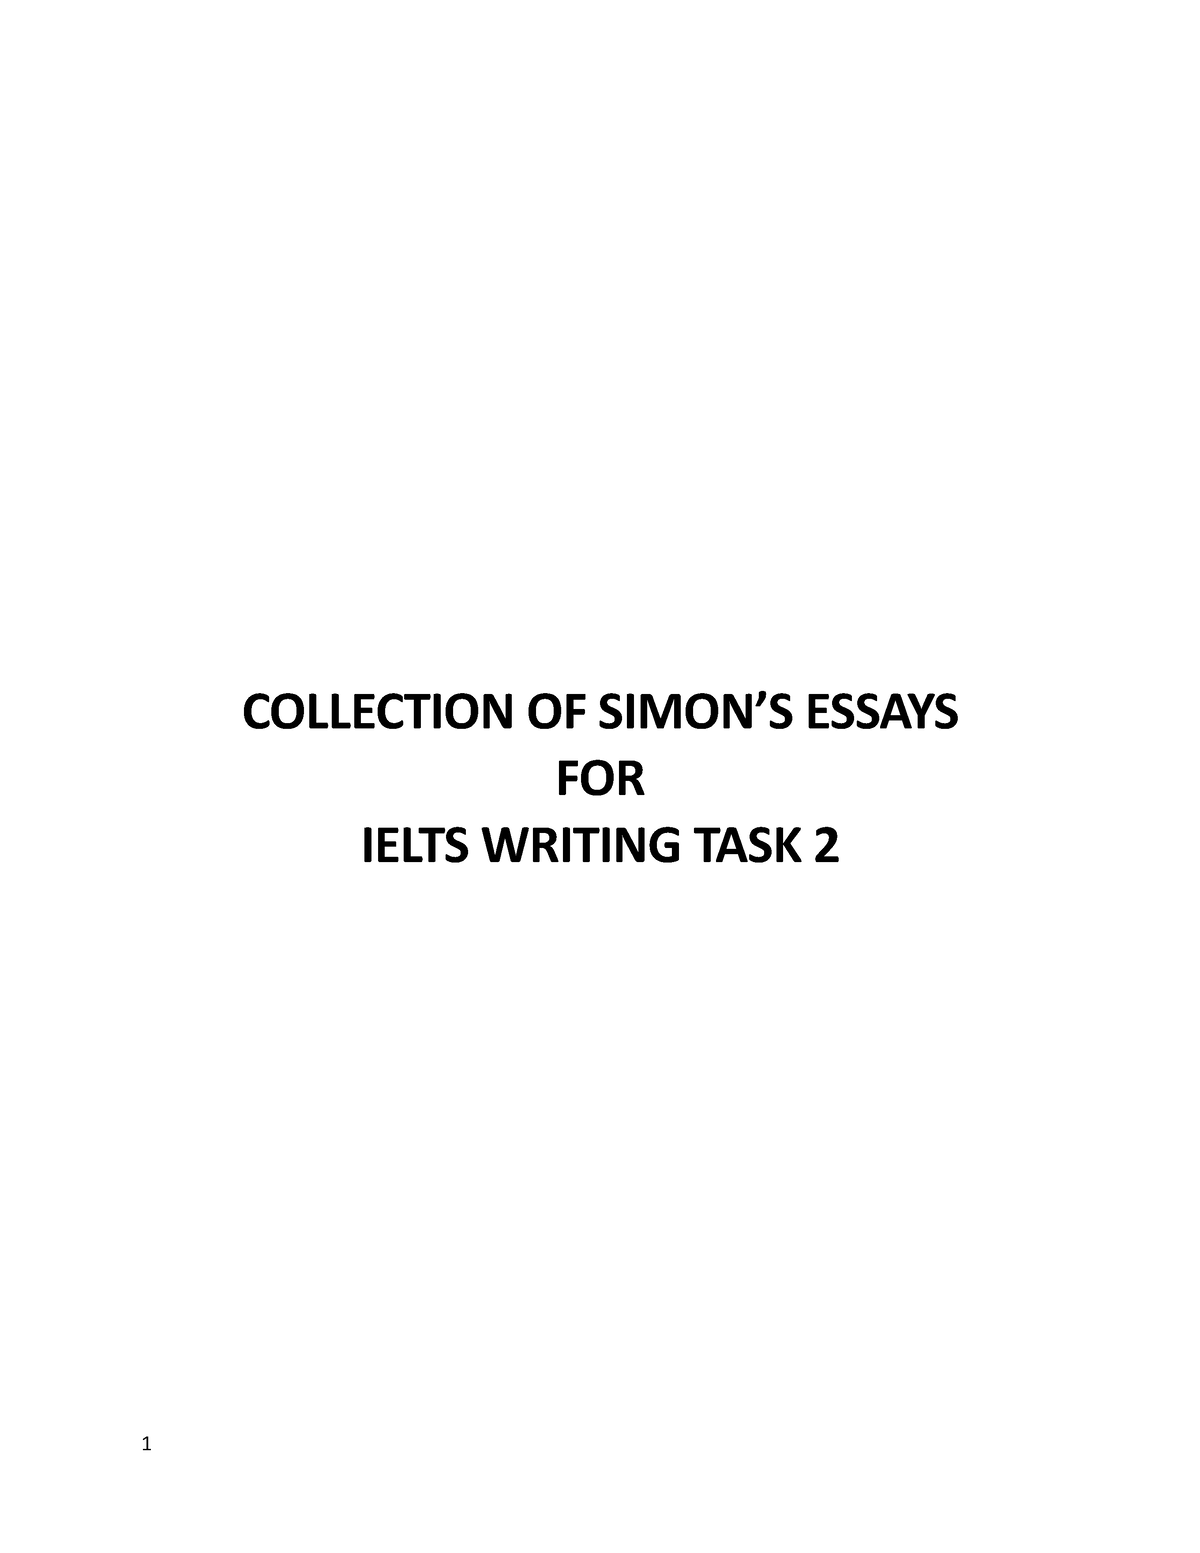 simon essays pdf